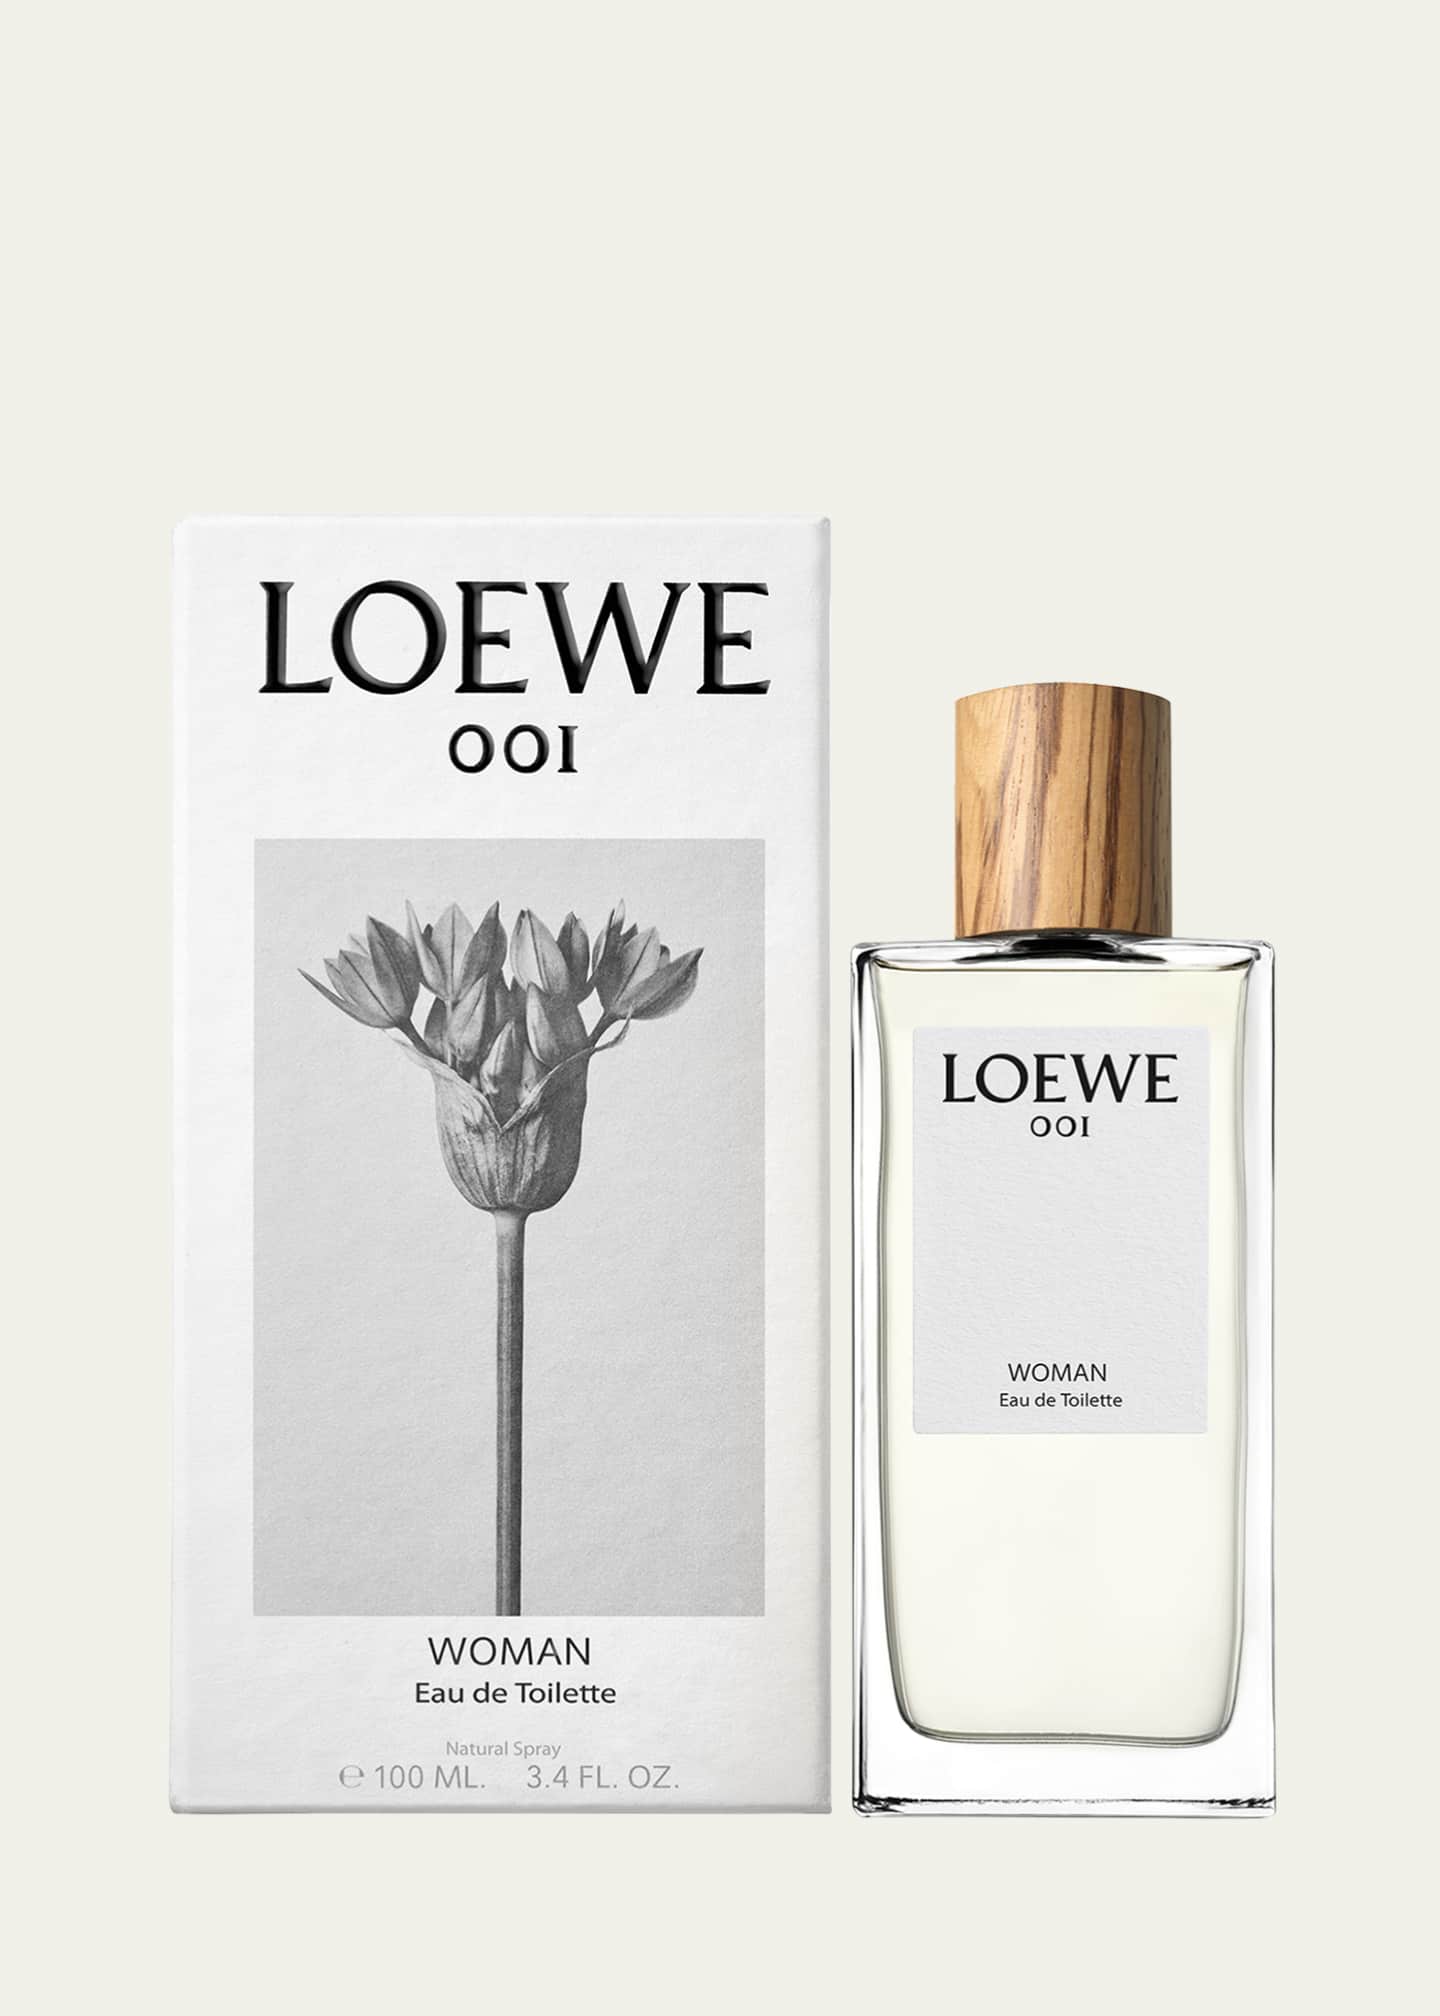 LOEWE Perfumes First American Store Bergdorf Goodman NYC — Anne of  Carversville